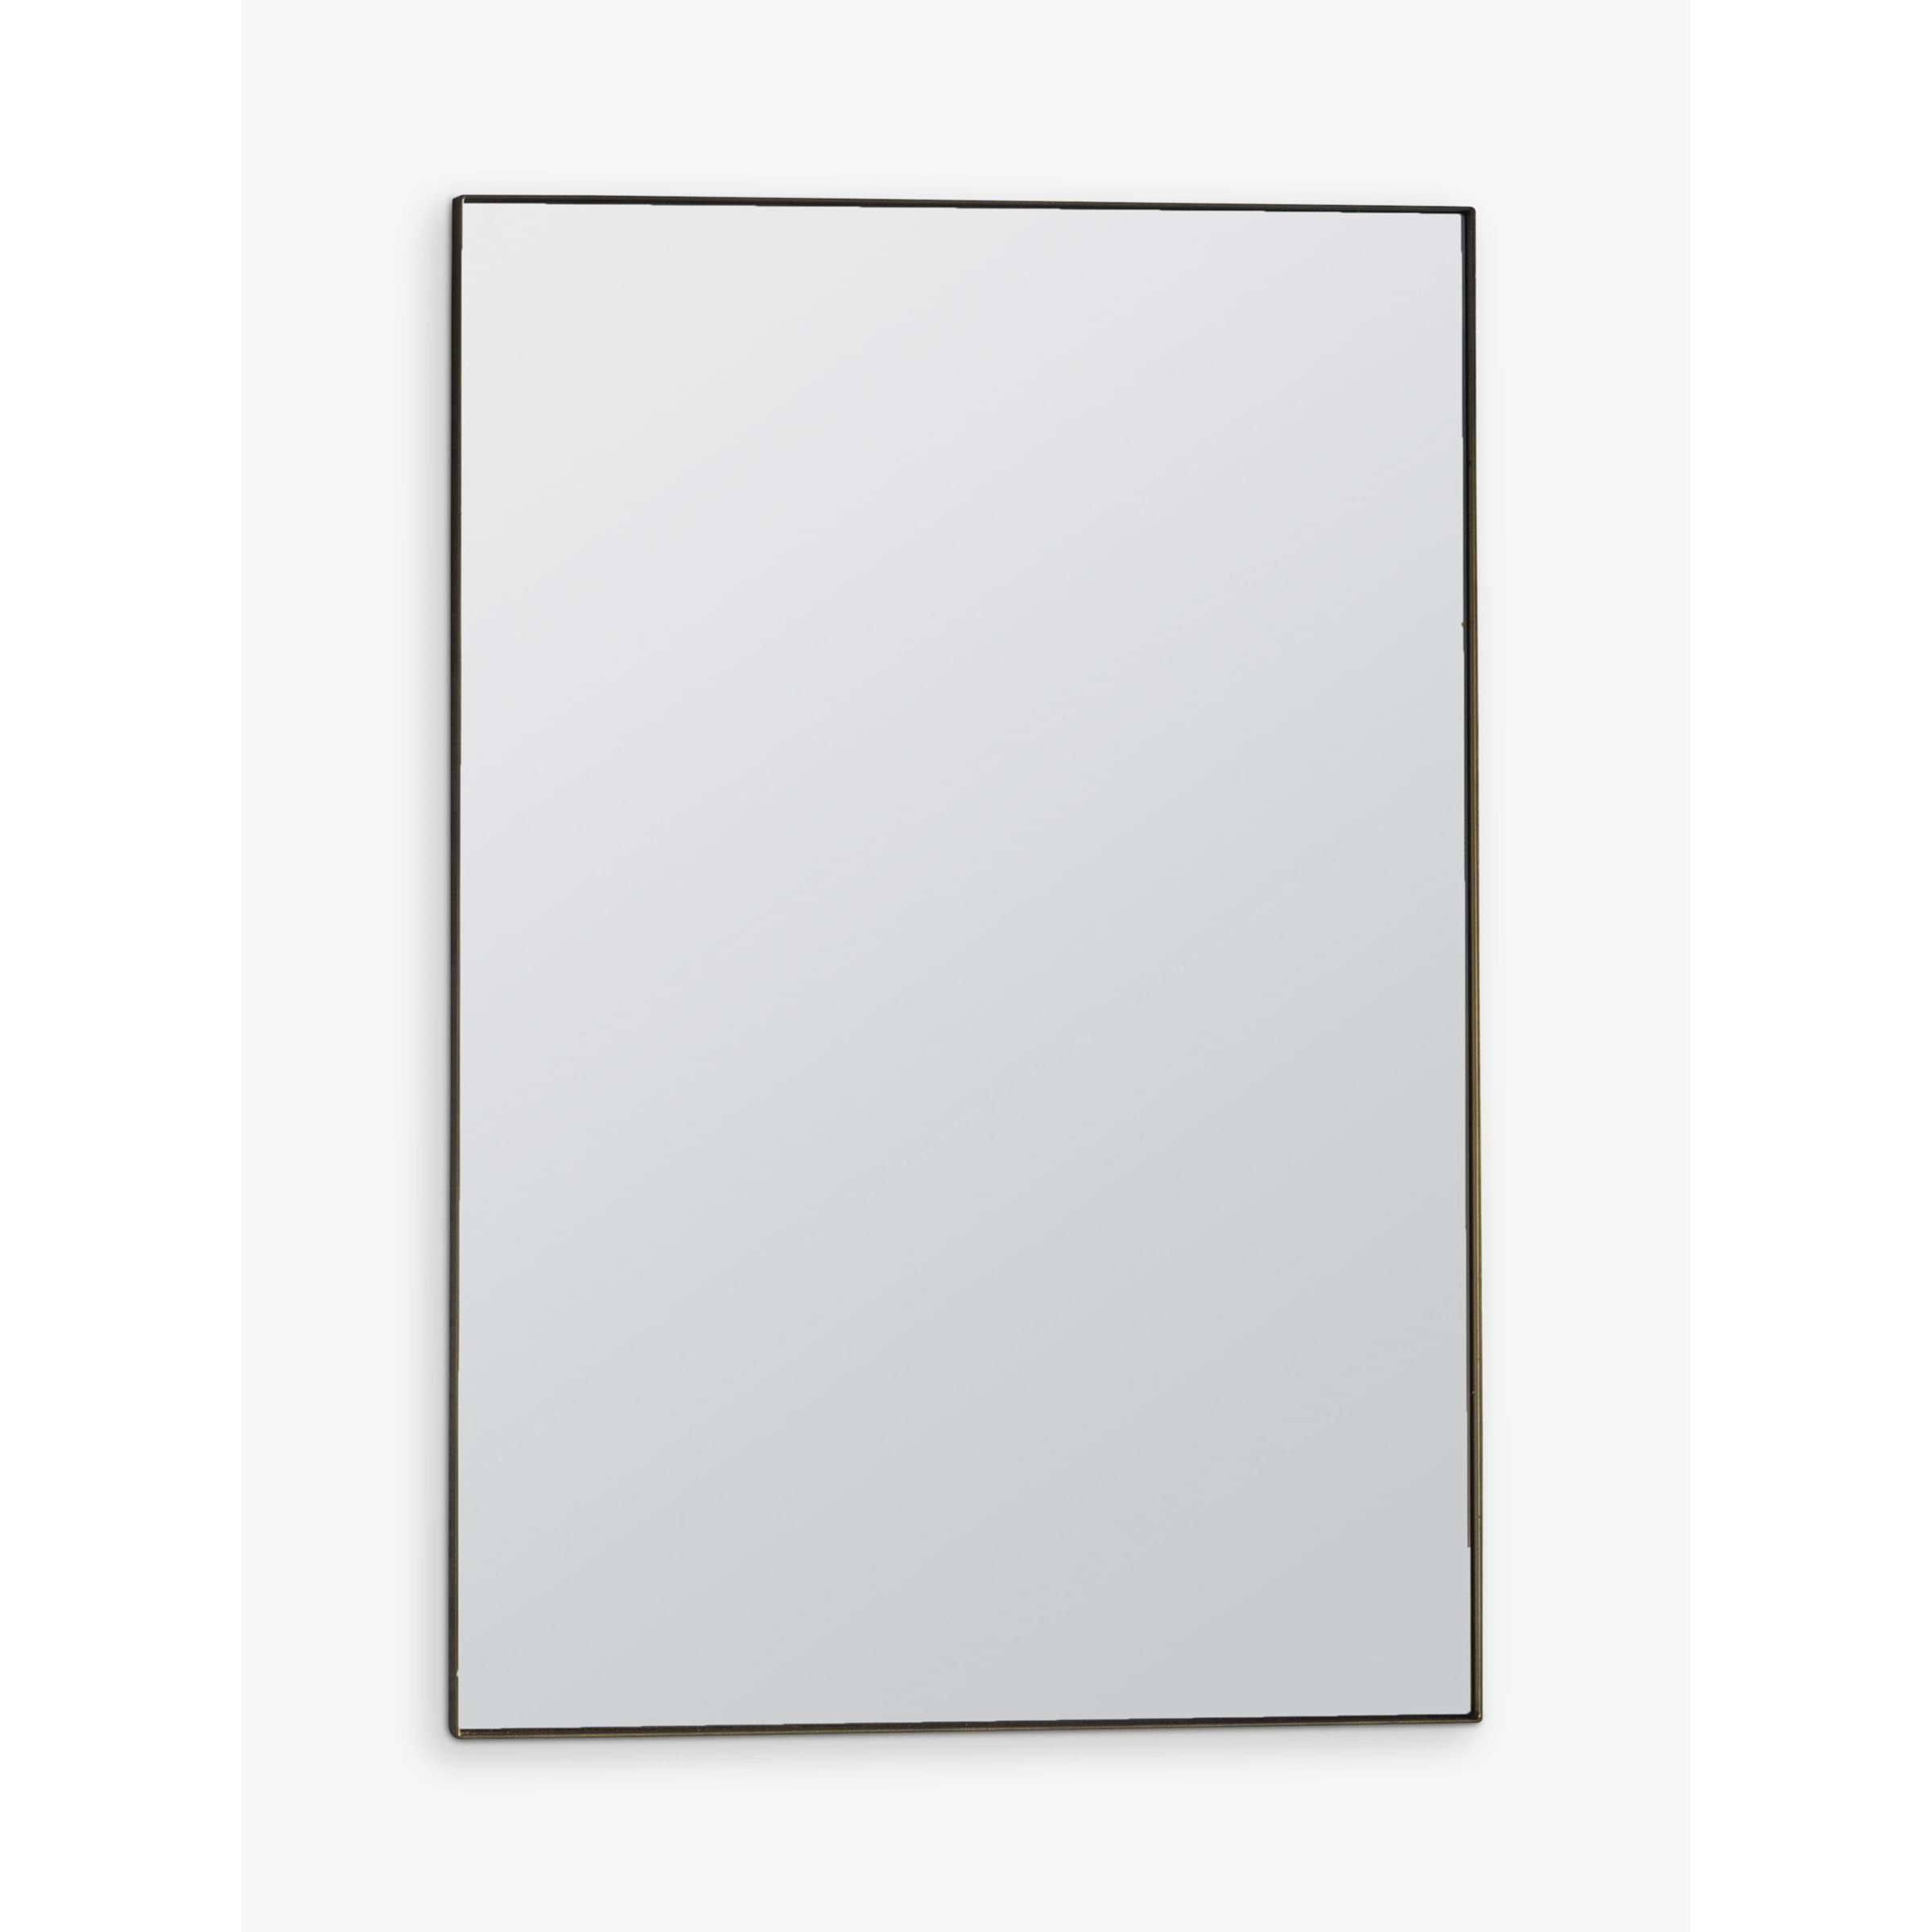 Gallery Direct Hurston Rectangular Metal Frame Wall Mirror - image 1